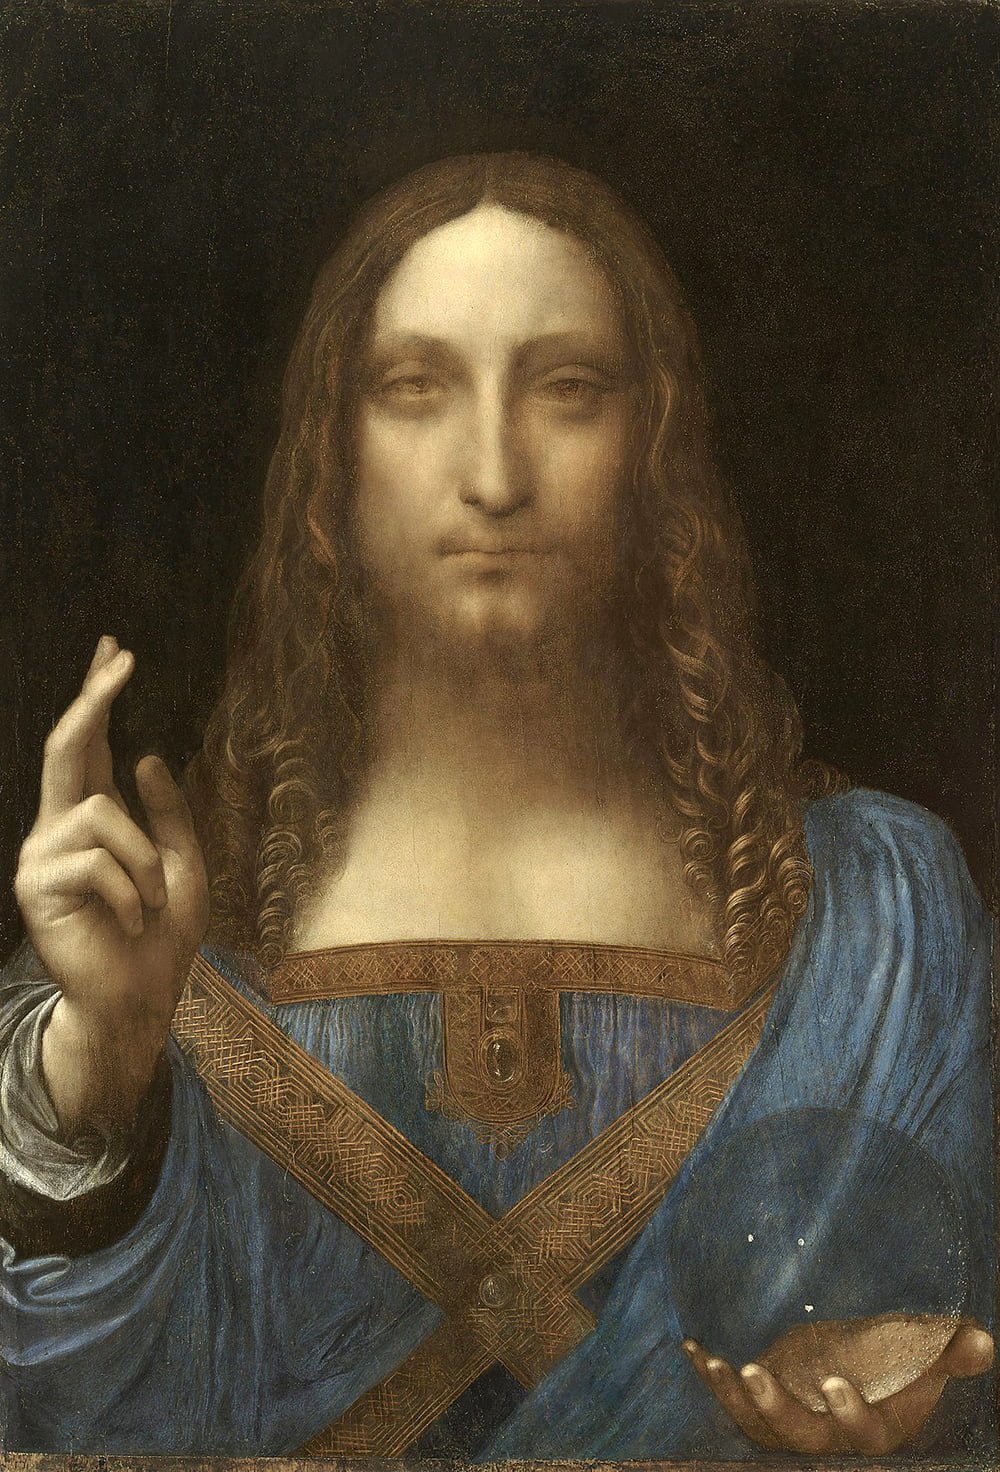 Salvator Mundi (1490), Leonardo da Vinci